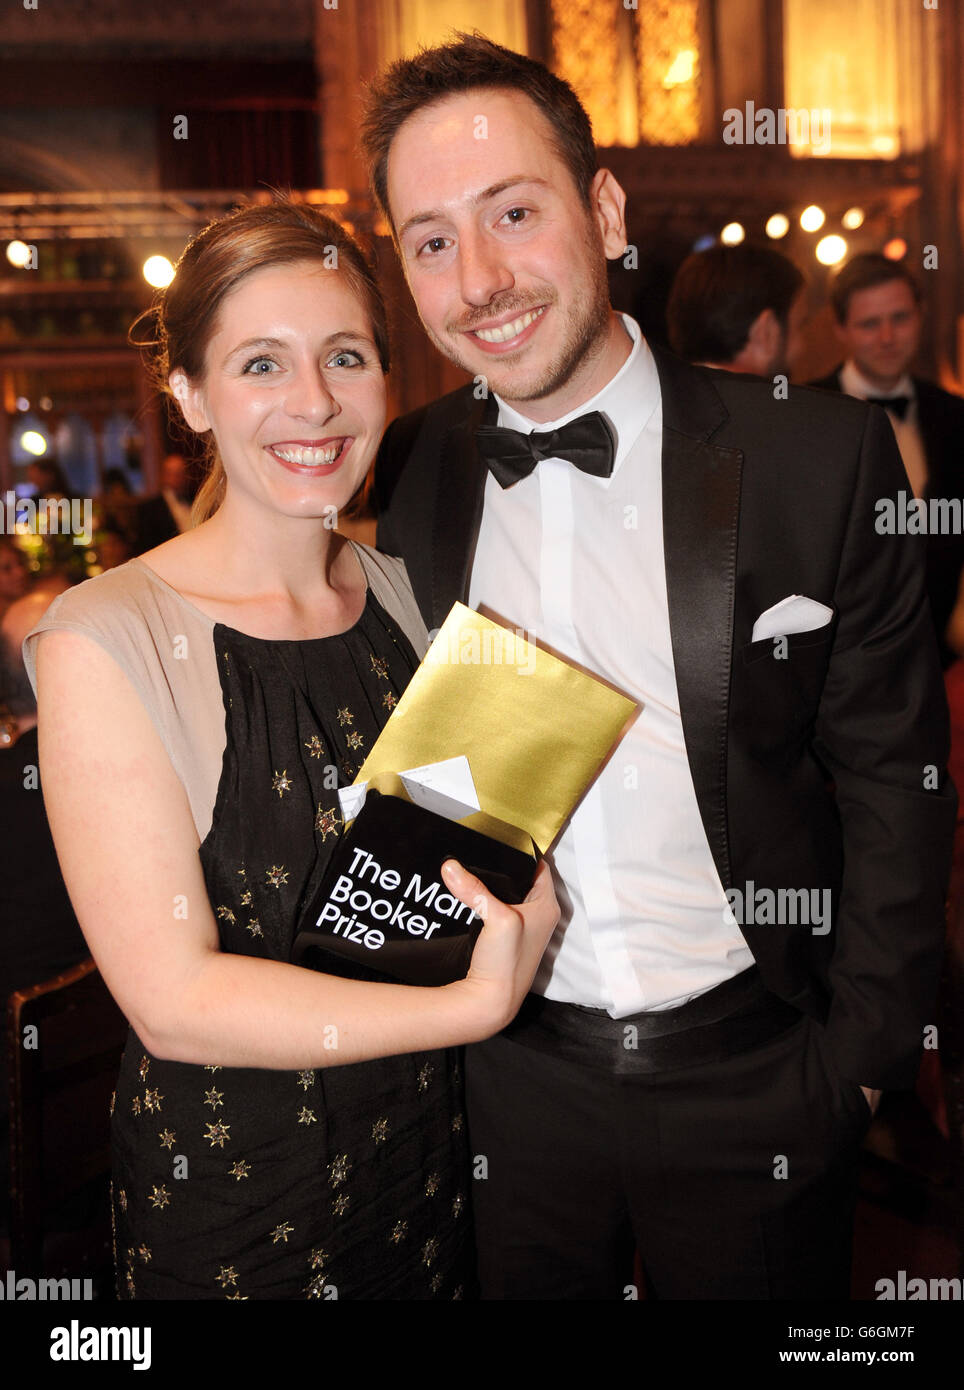 Eleanor Catton, Gewinnerin des man Booker Prize für ihr Buch The Luminaries, posiert mit ihrem Partner, nachdem sie den Preis in der Guildhall, London, gewonnen hat. Stockfoto